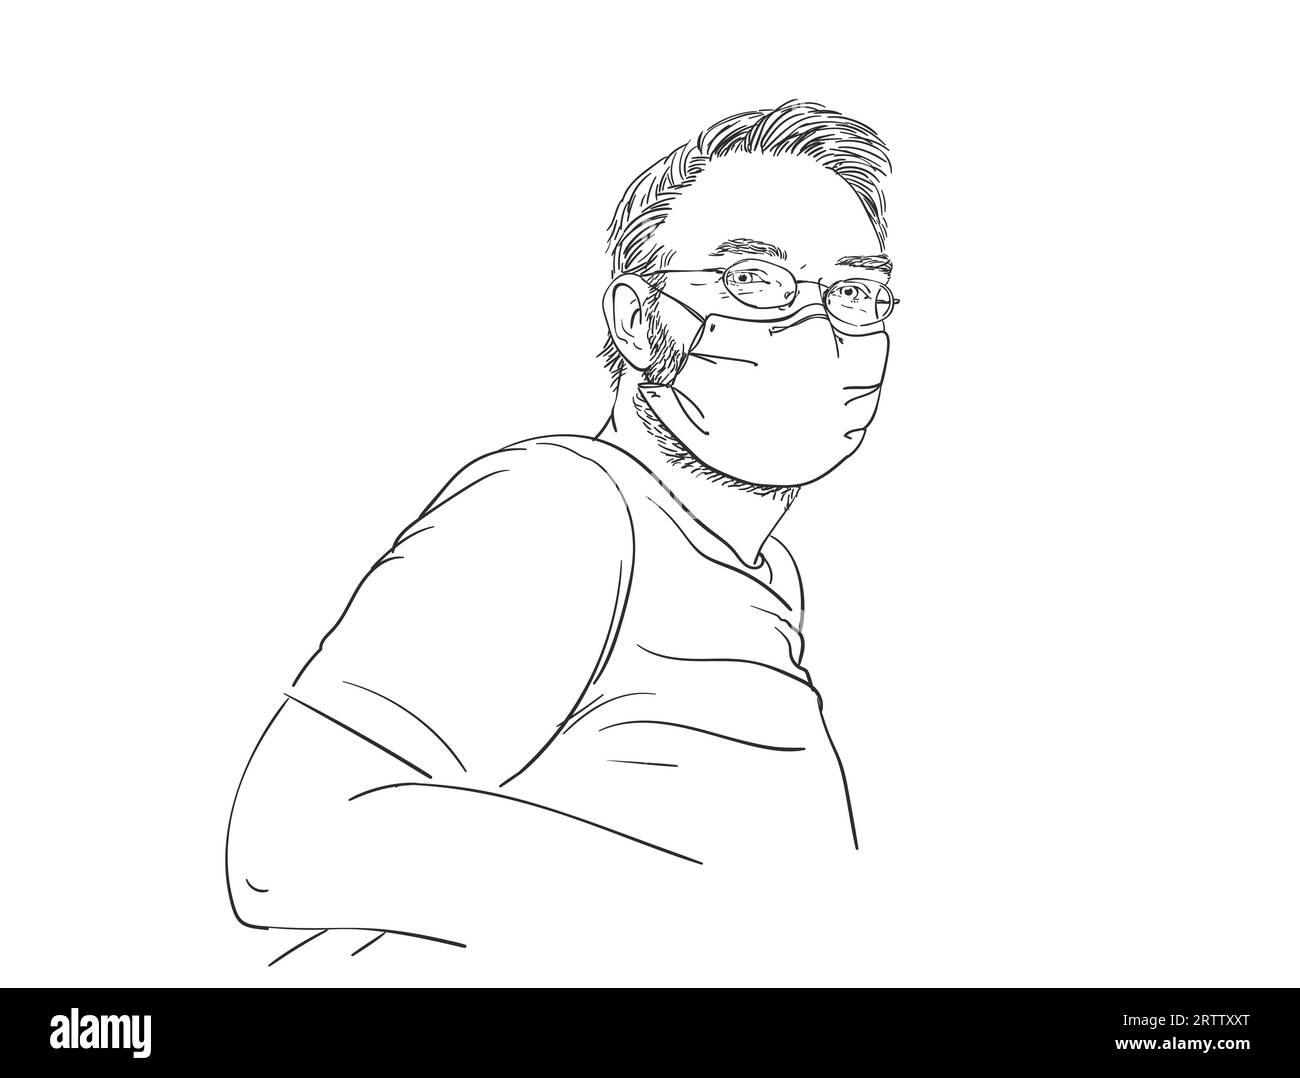 Coronavirus. L'homme portant un masque facial médical et des lunettes est assis dans une pose relaxante, portrait linéaire dessiné à la main, croquis vectoriel Illustration de Vecteur